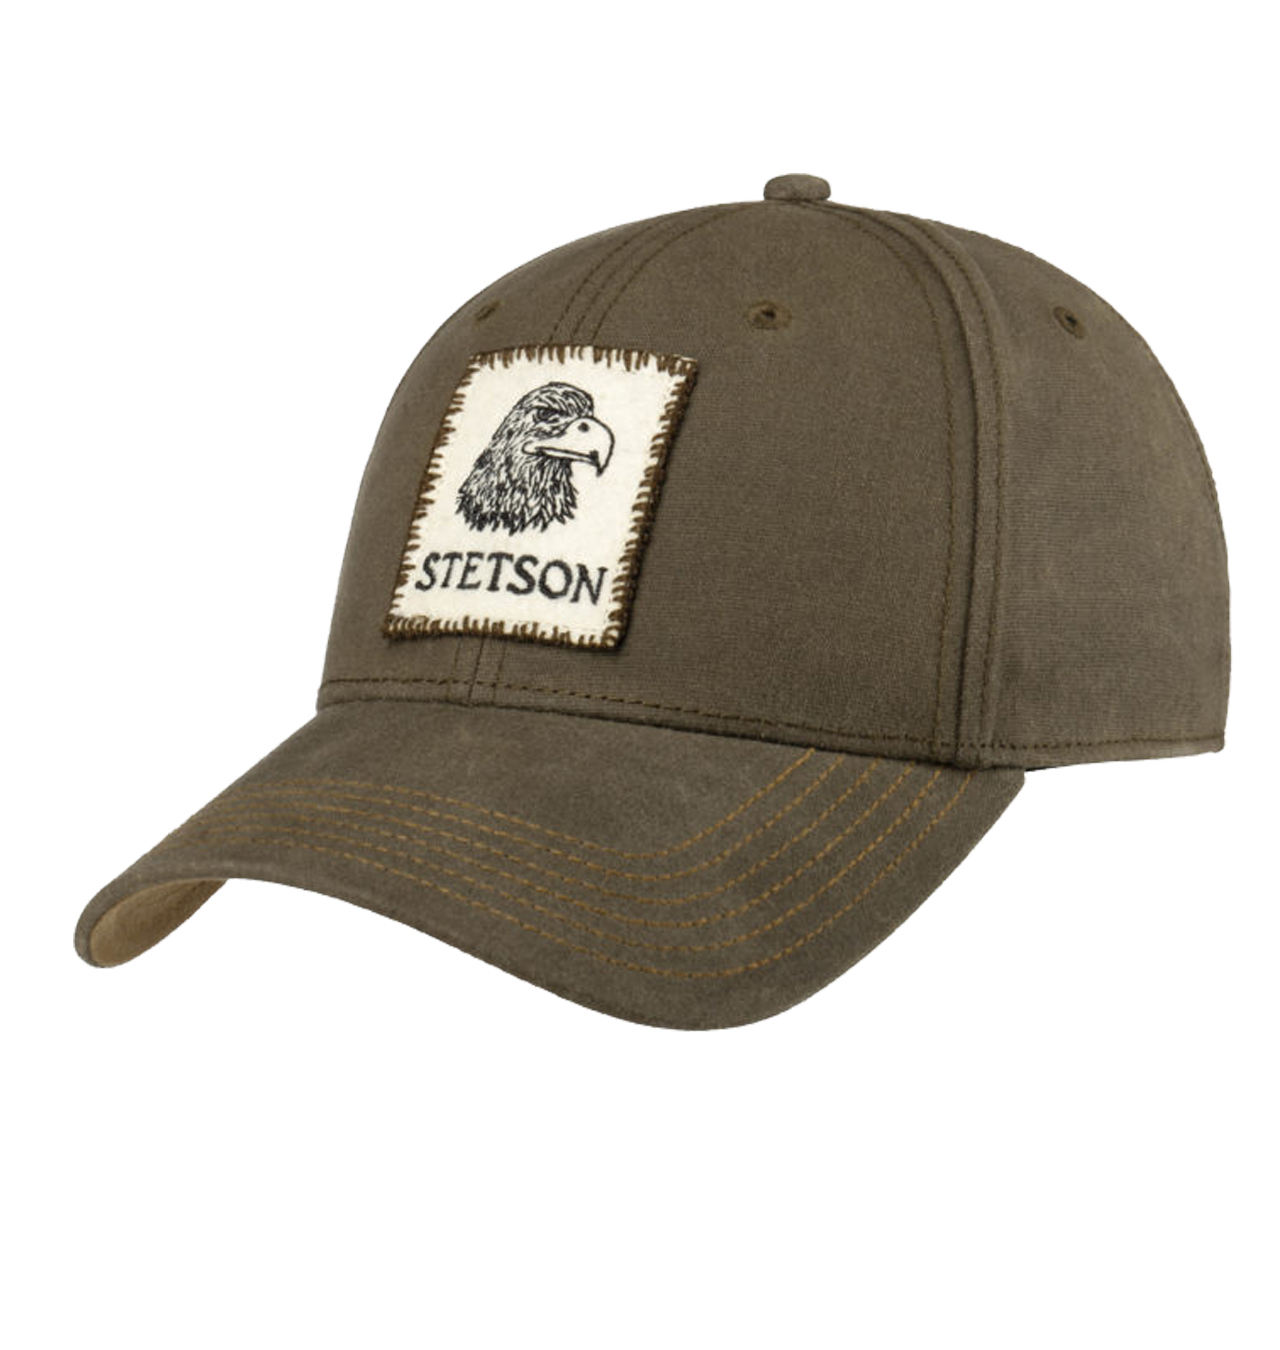 Stetson - Vintage Eagle Waxed Baseball Cap - Olive